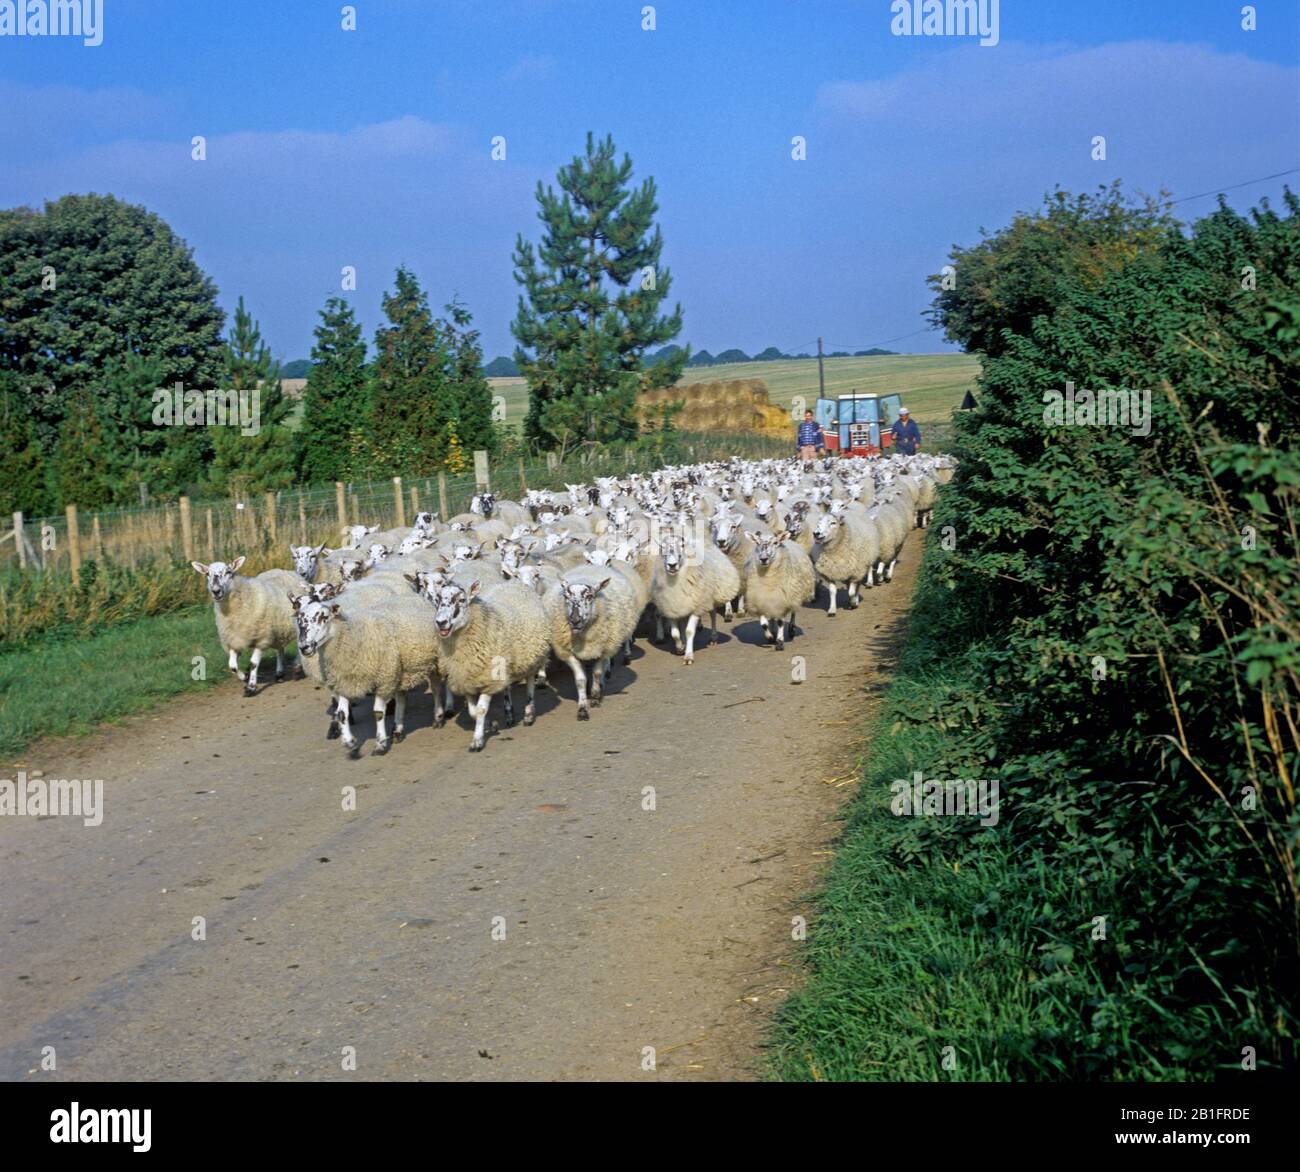 North of England Mule Sheep wird auf einer kleinen Landstraße in Berkshire gefahren, gefolgt von Hirten und einem Traktor Stockfoto